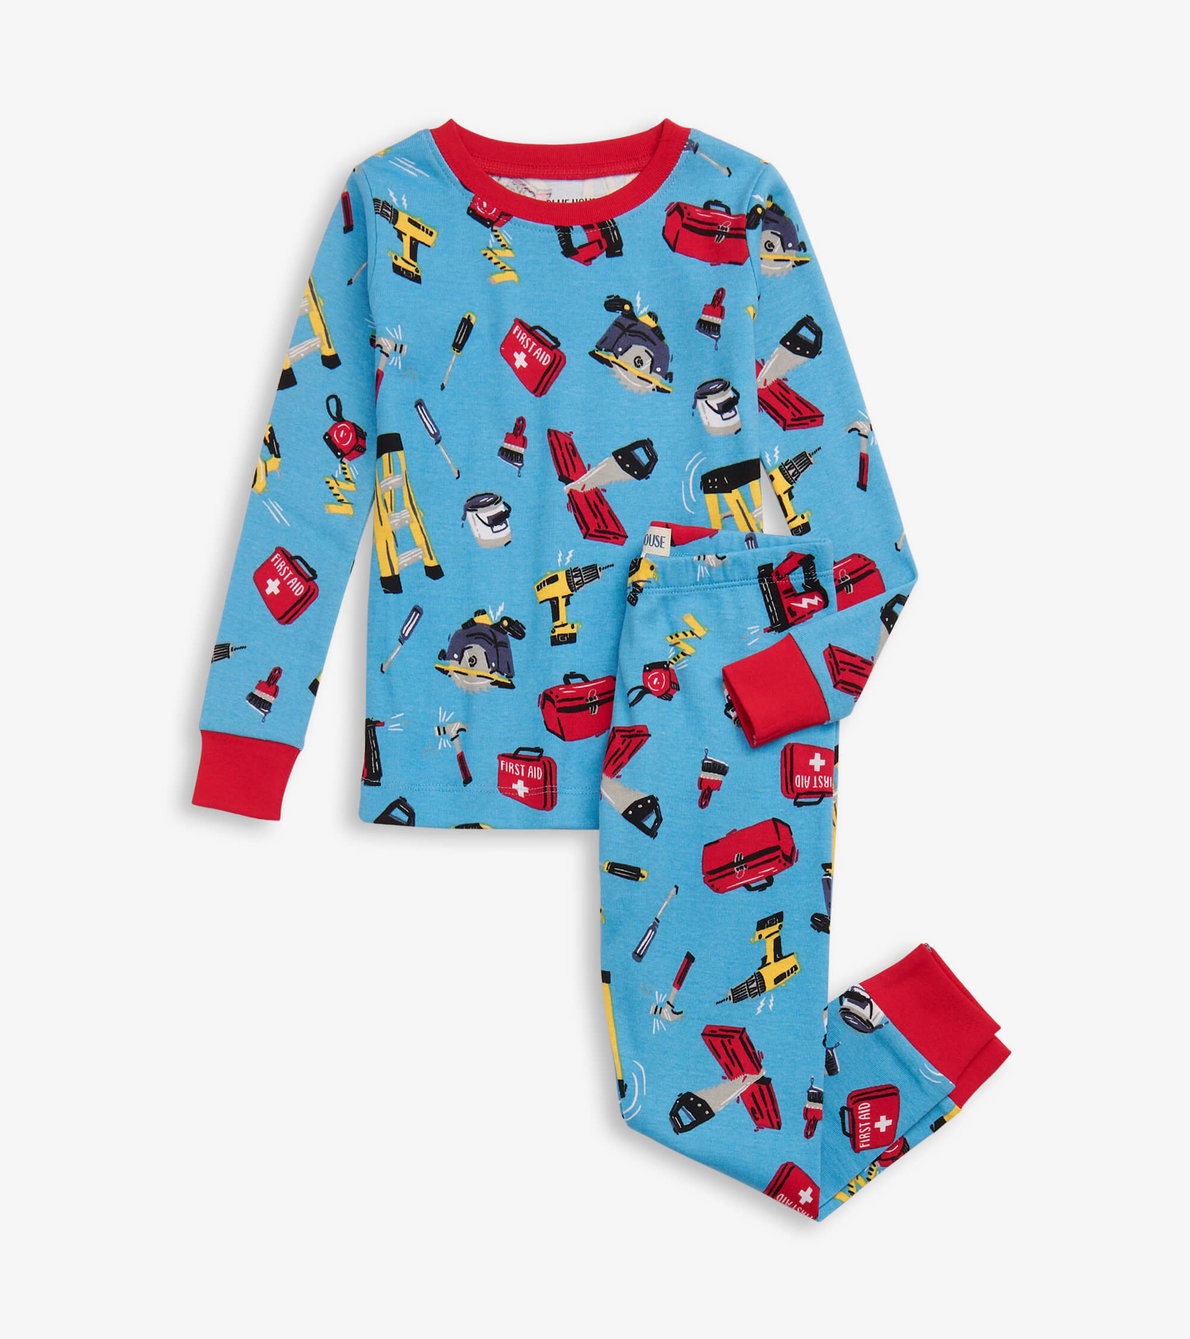 View larger image of Handyman Kids Pajama Set